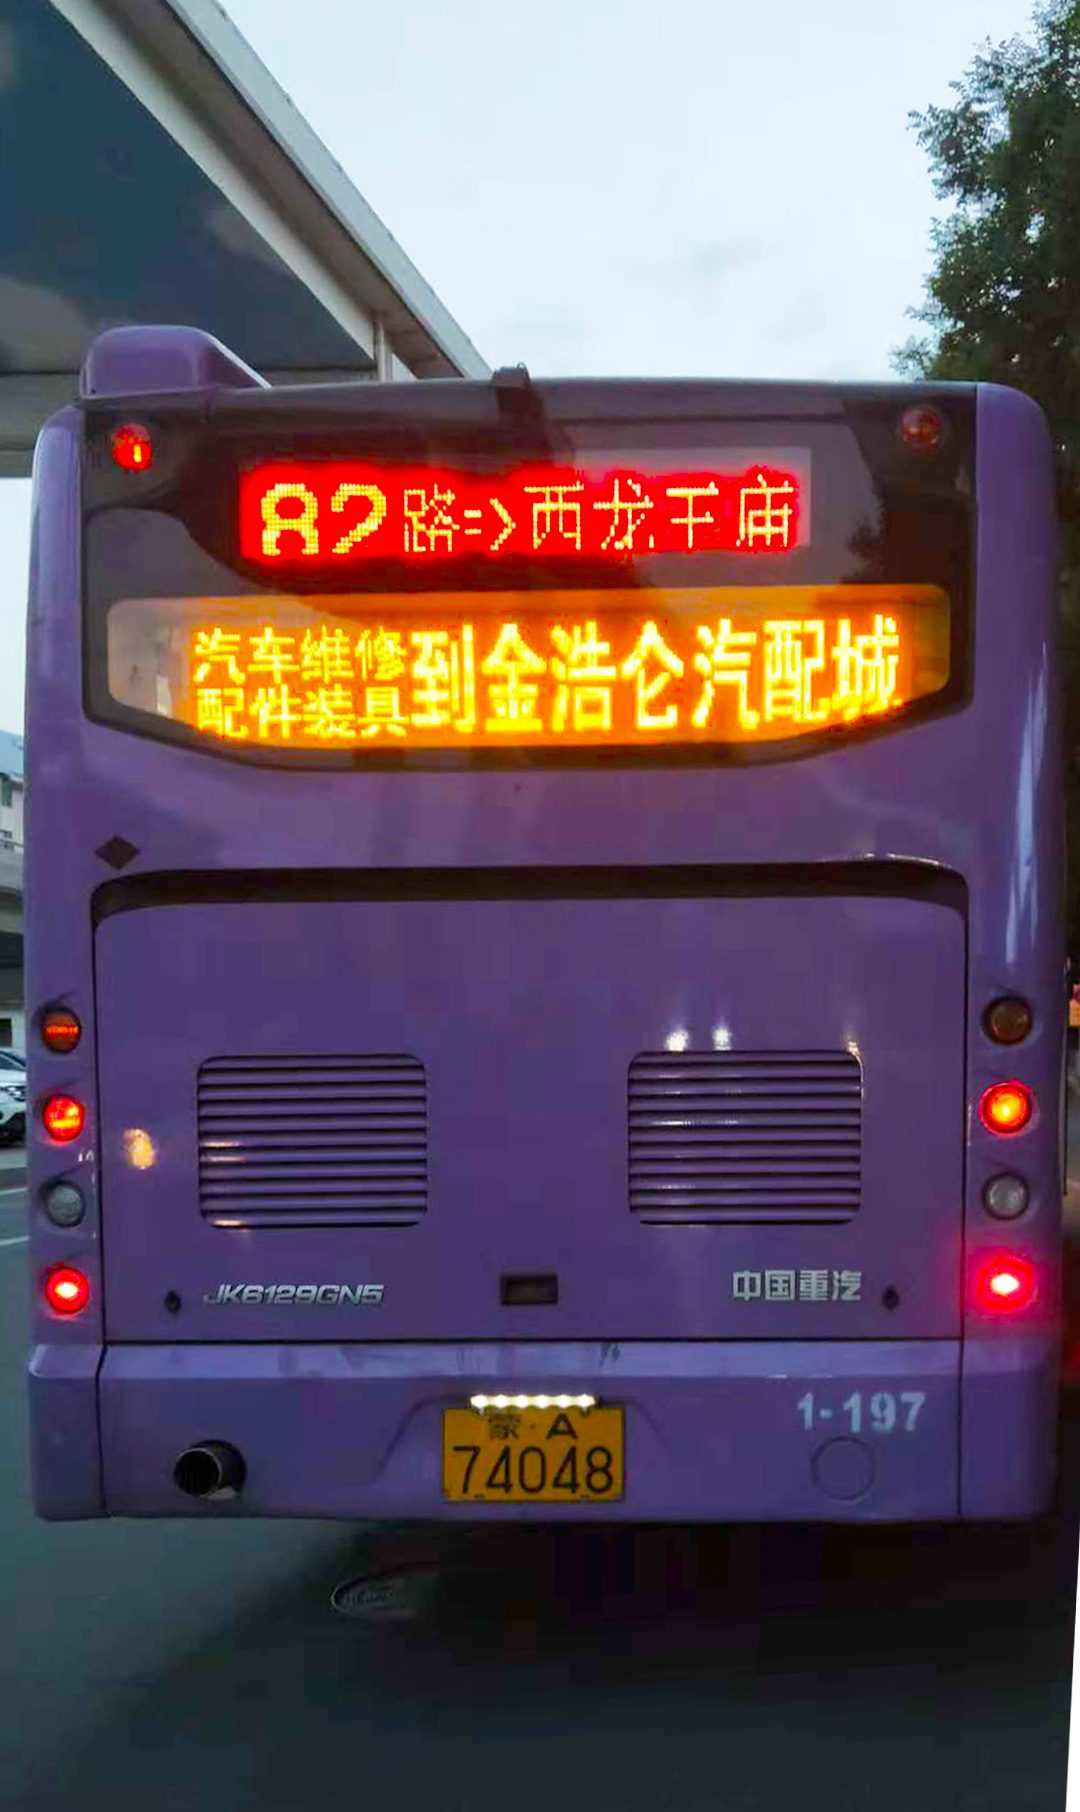 呼和浩特公交車(chē)廣告